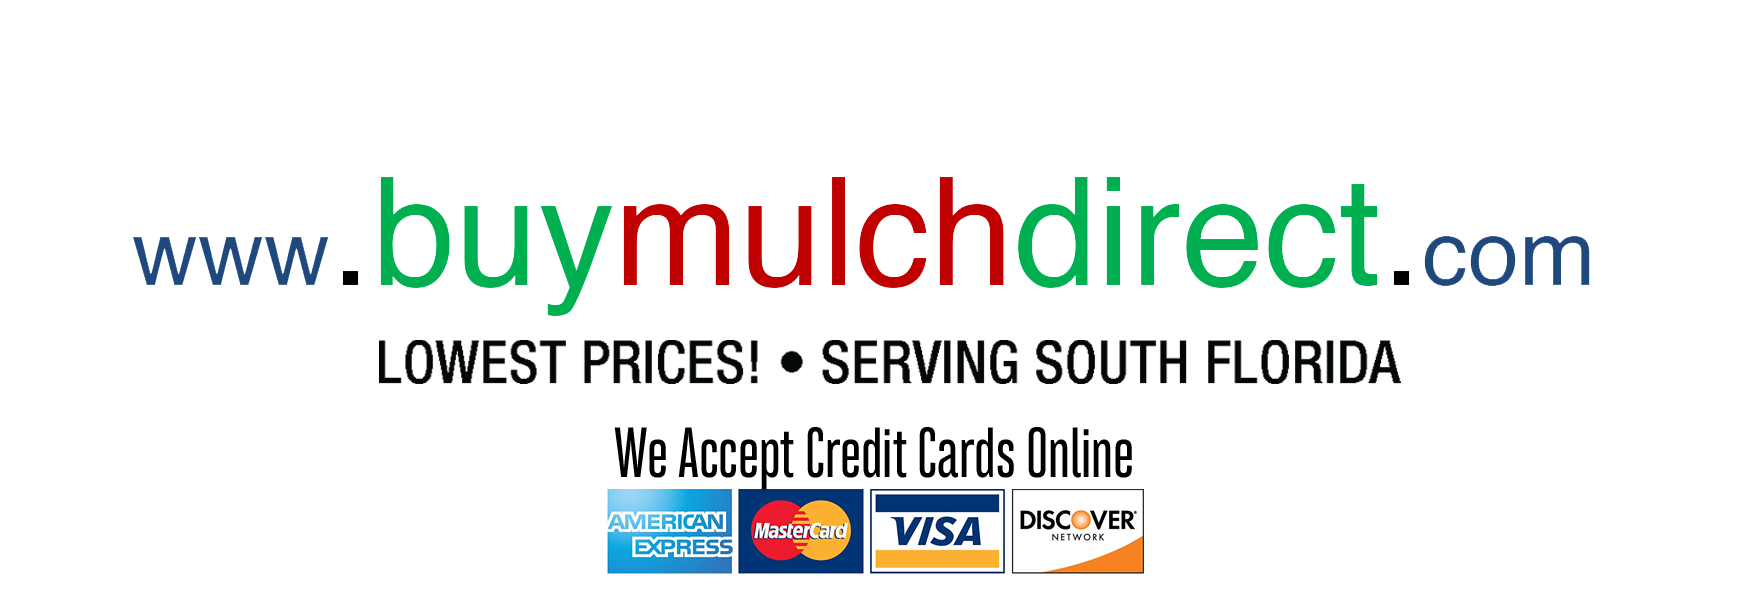 Buy Mulch Direct